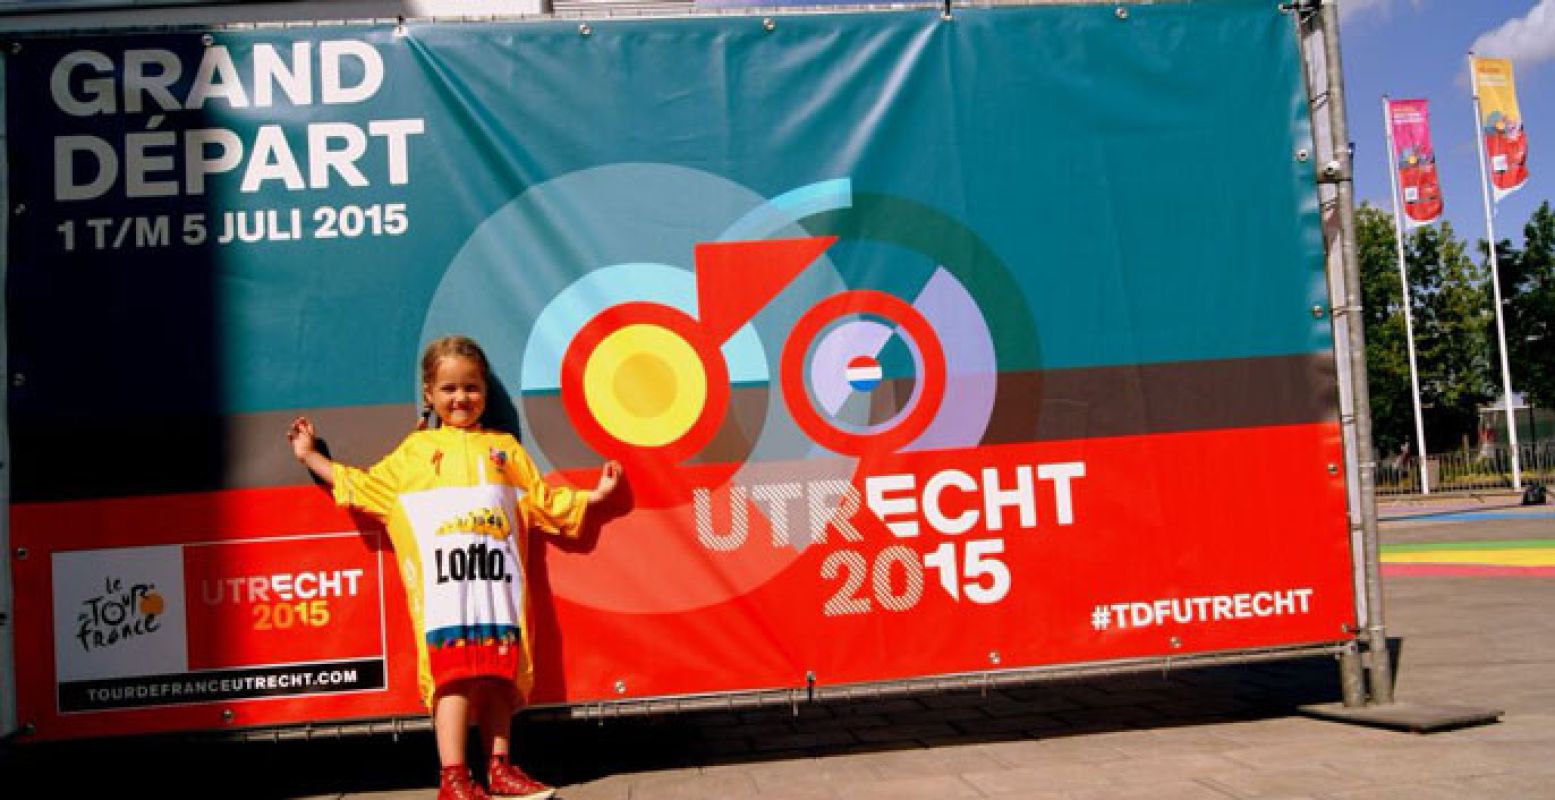 De Tour de France start voor het eerst in Utrecht. Vier het feest mee! Foto: Tour de France Utrecht